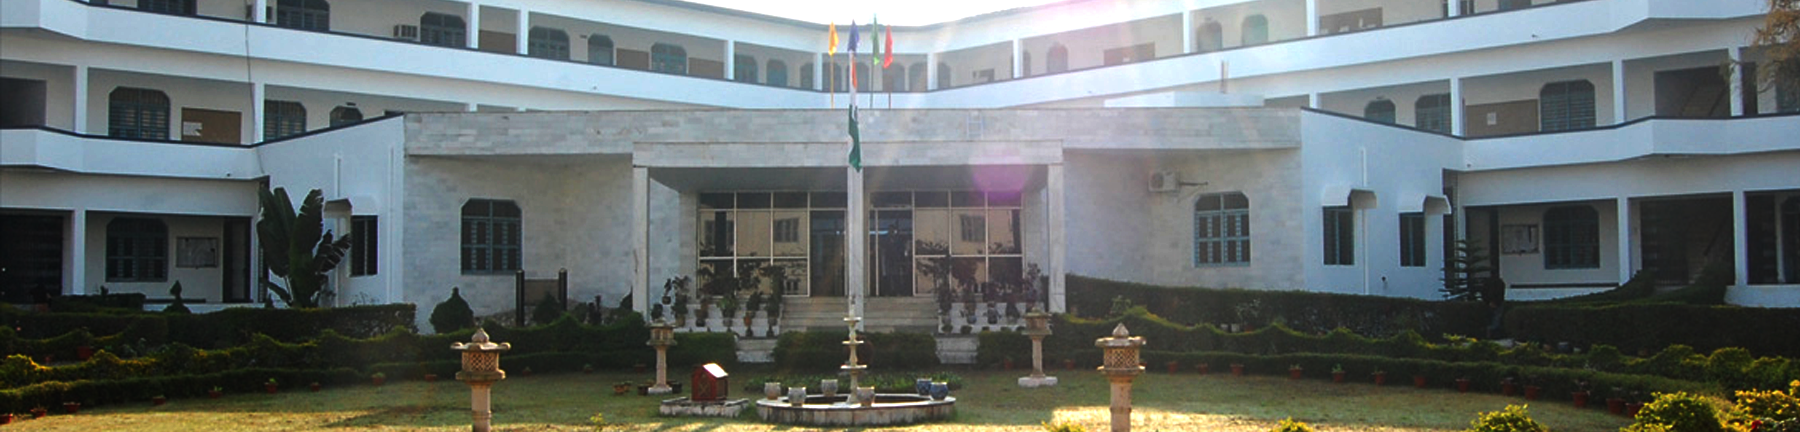 Amrapali Institute Of Hotel Management, Haldwani Image